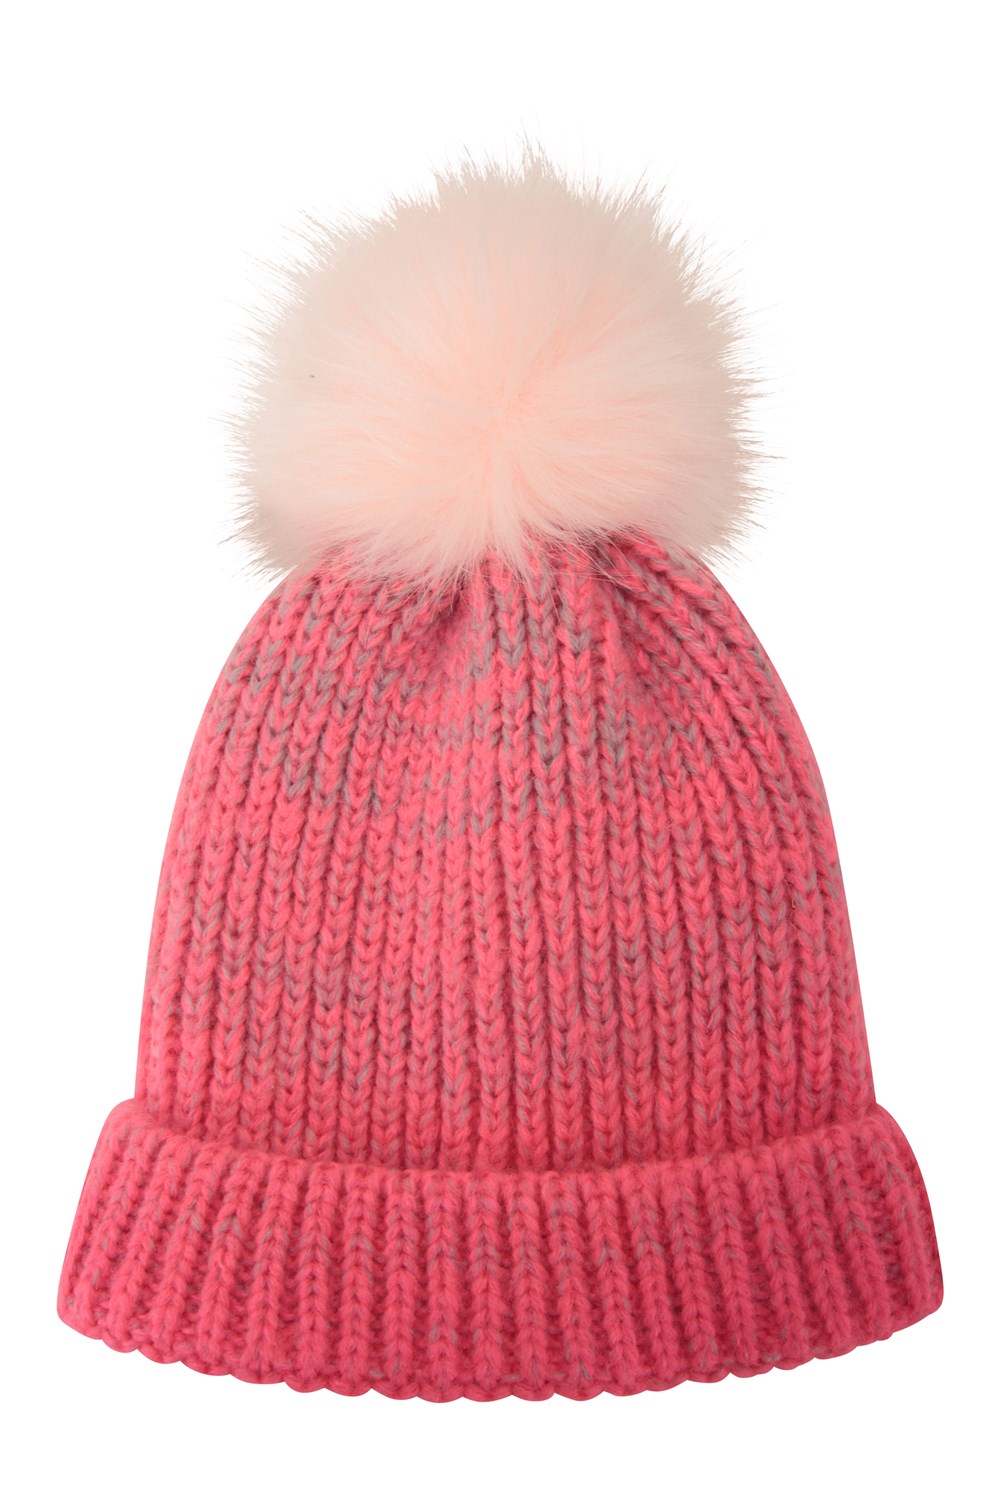 Mountain Warehouse Fluff Bomb Kids Beanie - Pom Pom Warm Winter Hat | eBay